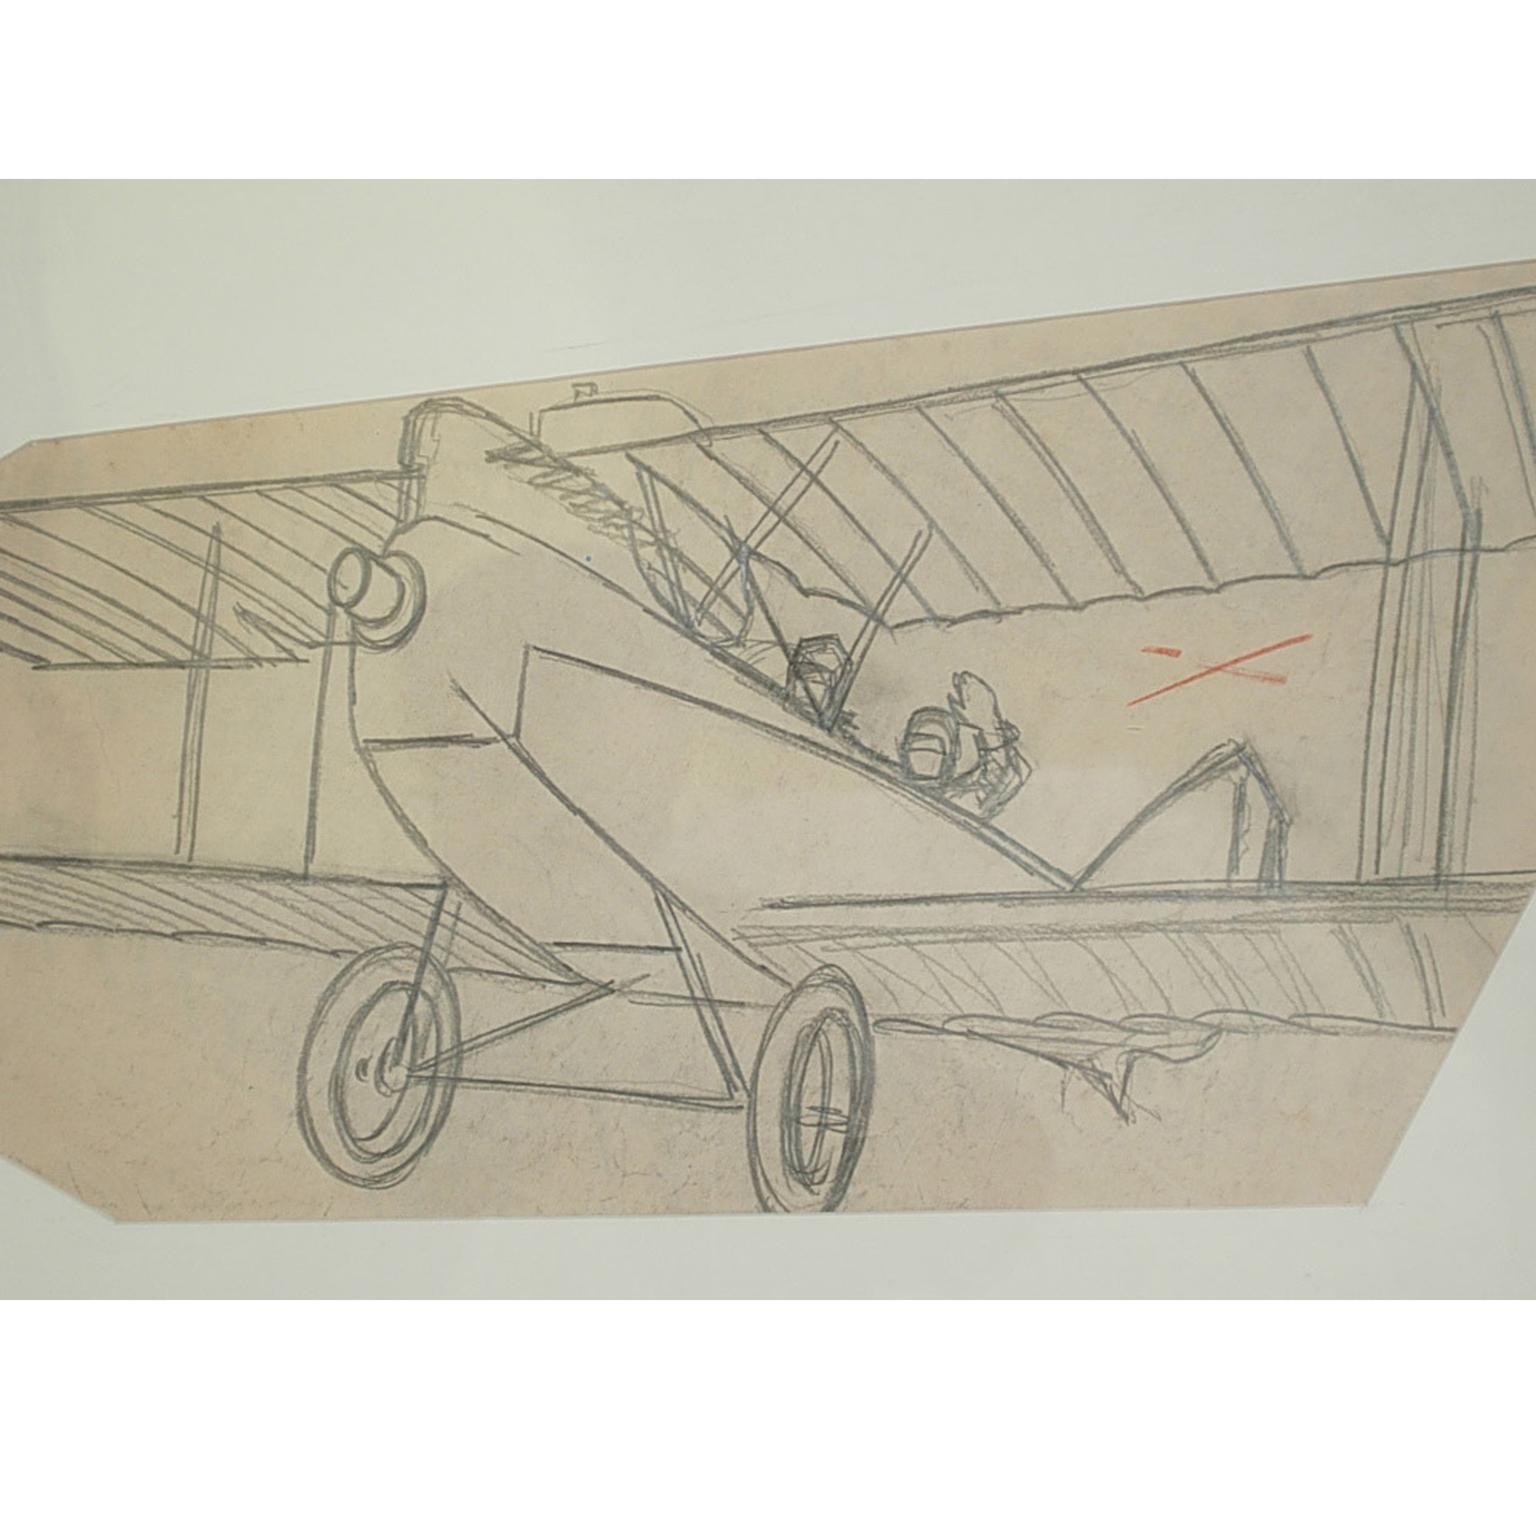 Dessin au crayon réalisé par Riccardo Cavigioli au début des années 1920 représentant un avion biplan de reconnaissance biplace A.I.C I de 1916, construit par Ufag à Budapest. Dimensions avec le cadre cm 68 x 38 pouces 26.8 x 15.
Riccardo Cavigioli